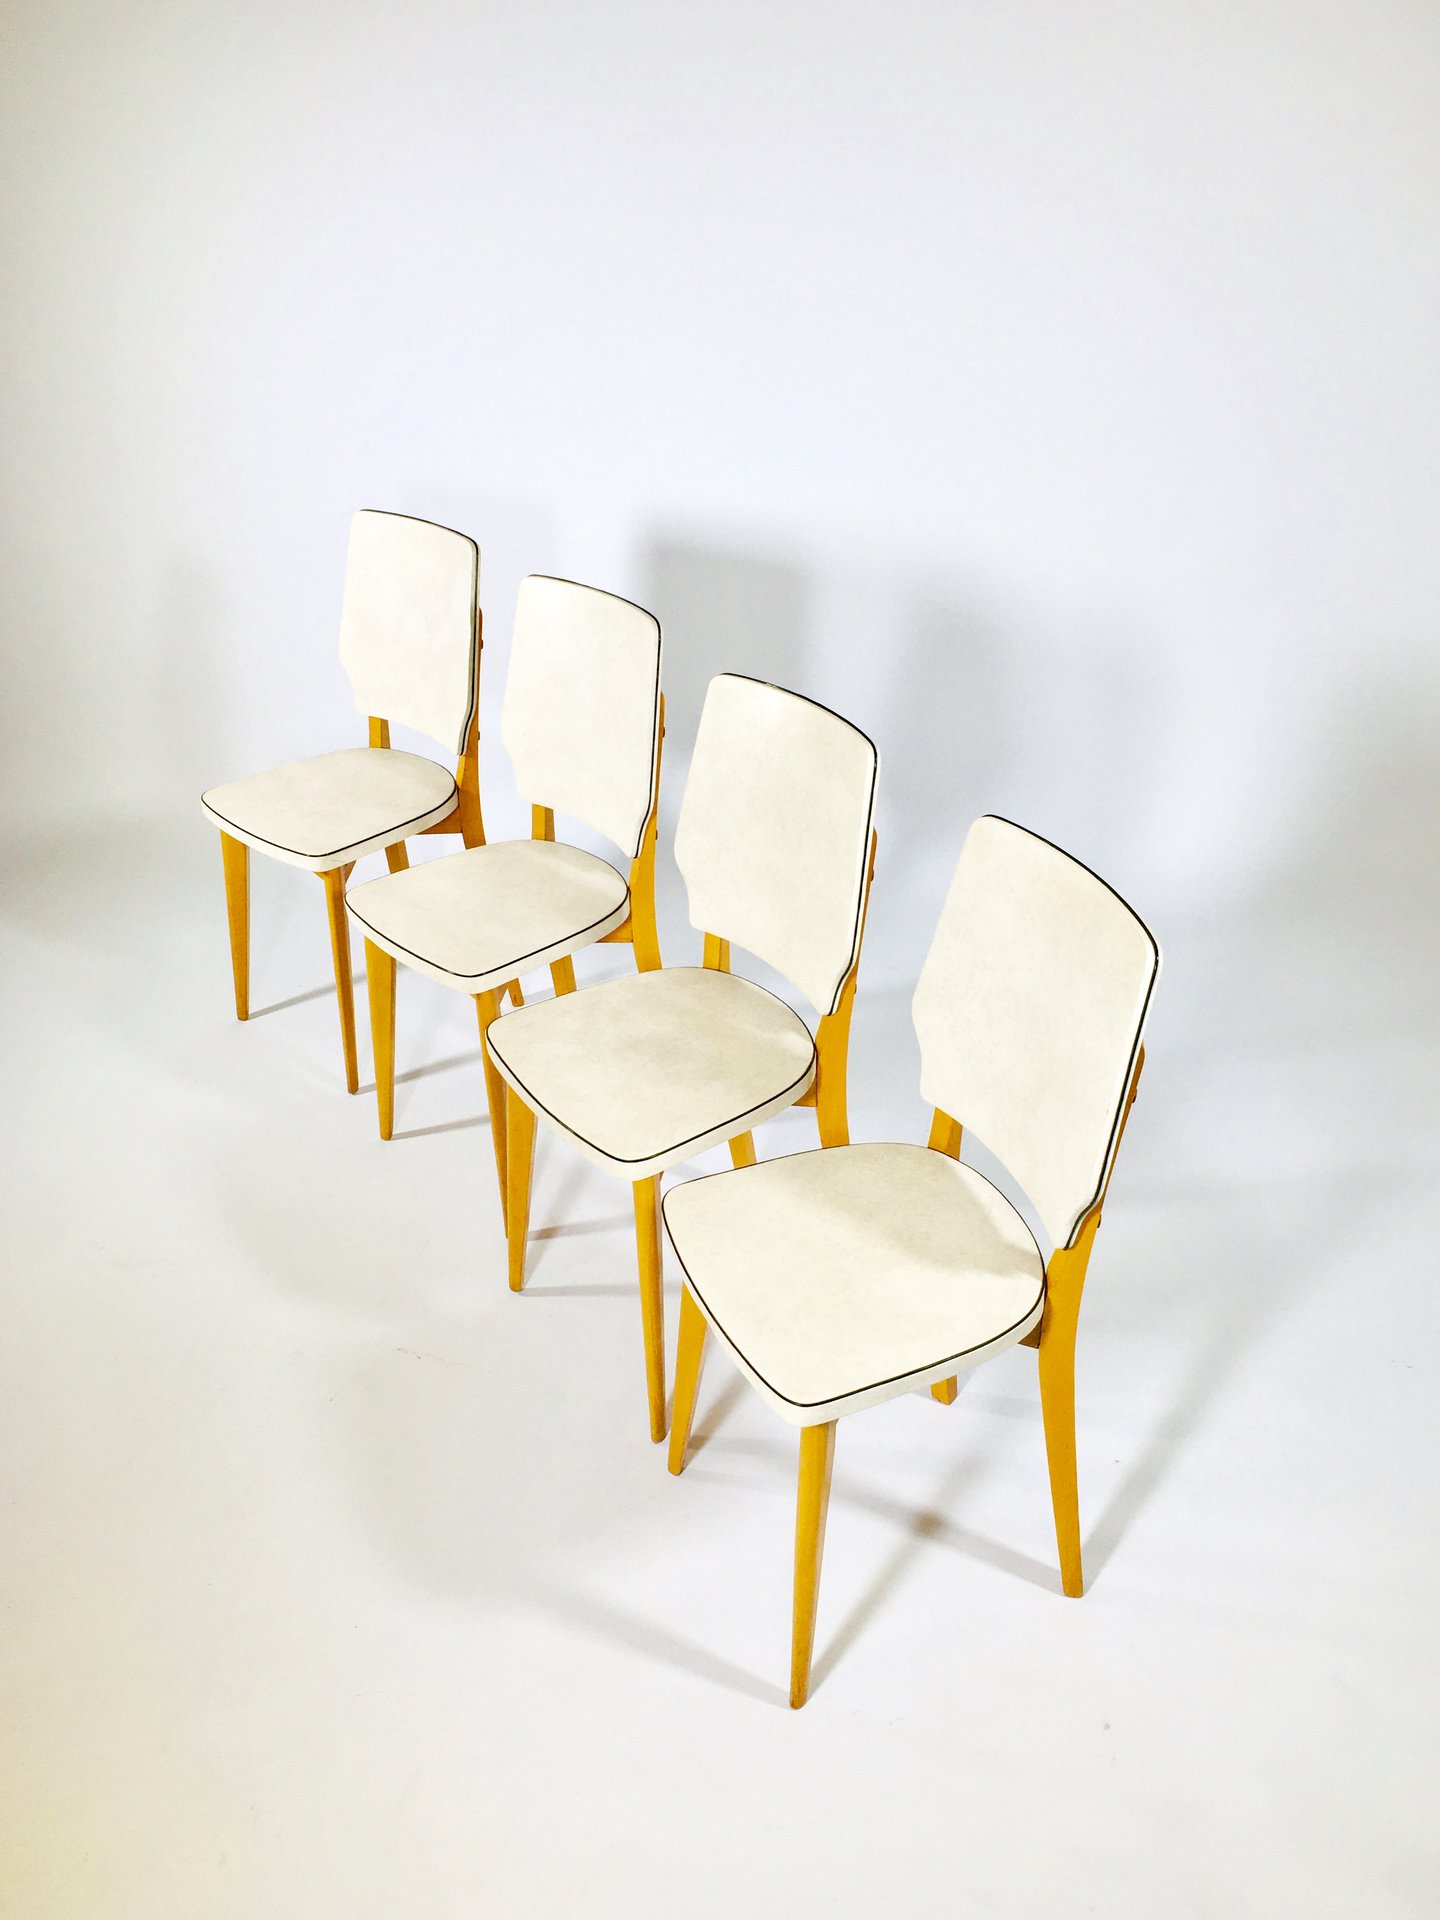 Série de 4 chaises